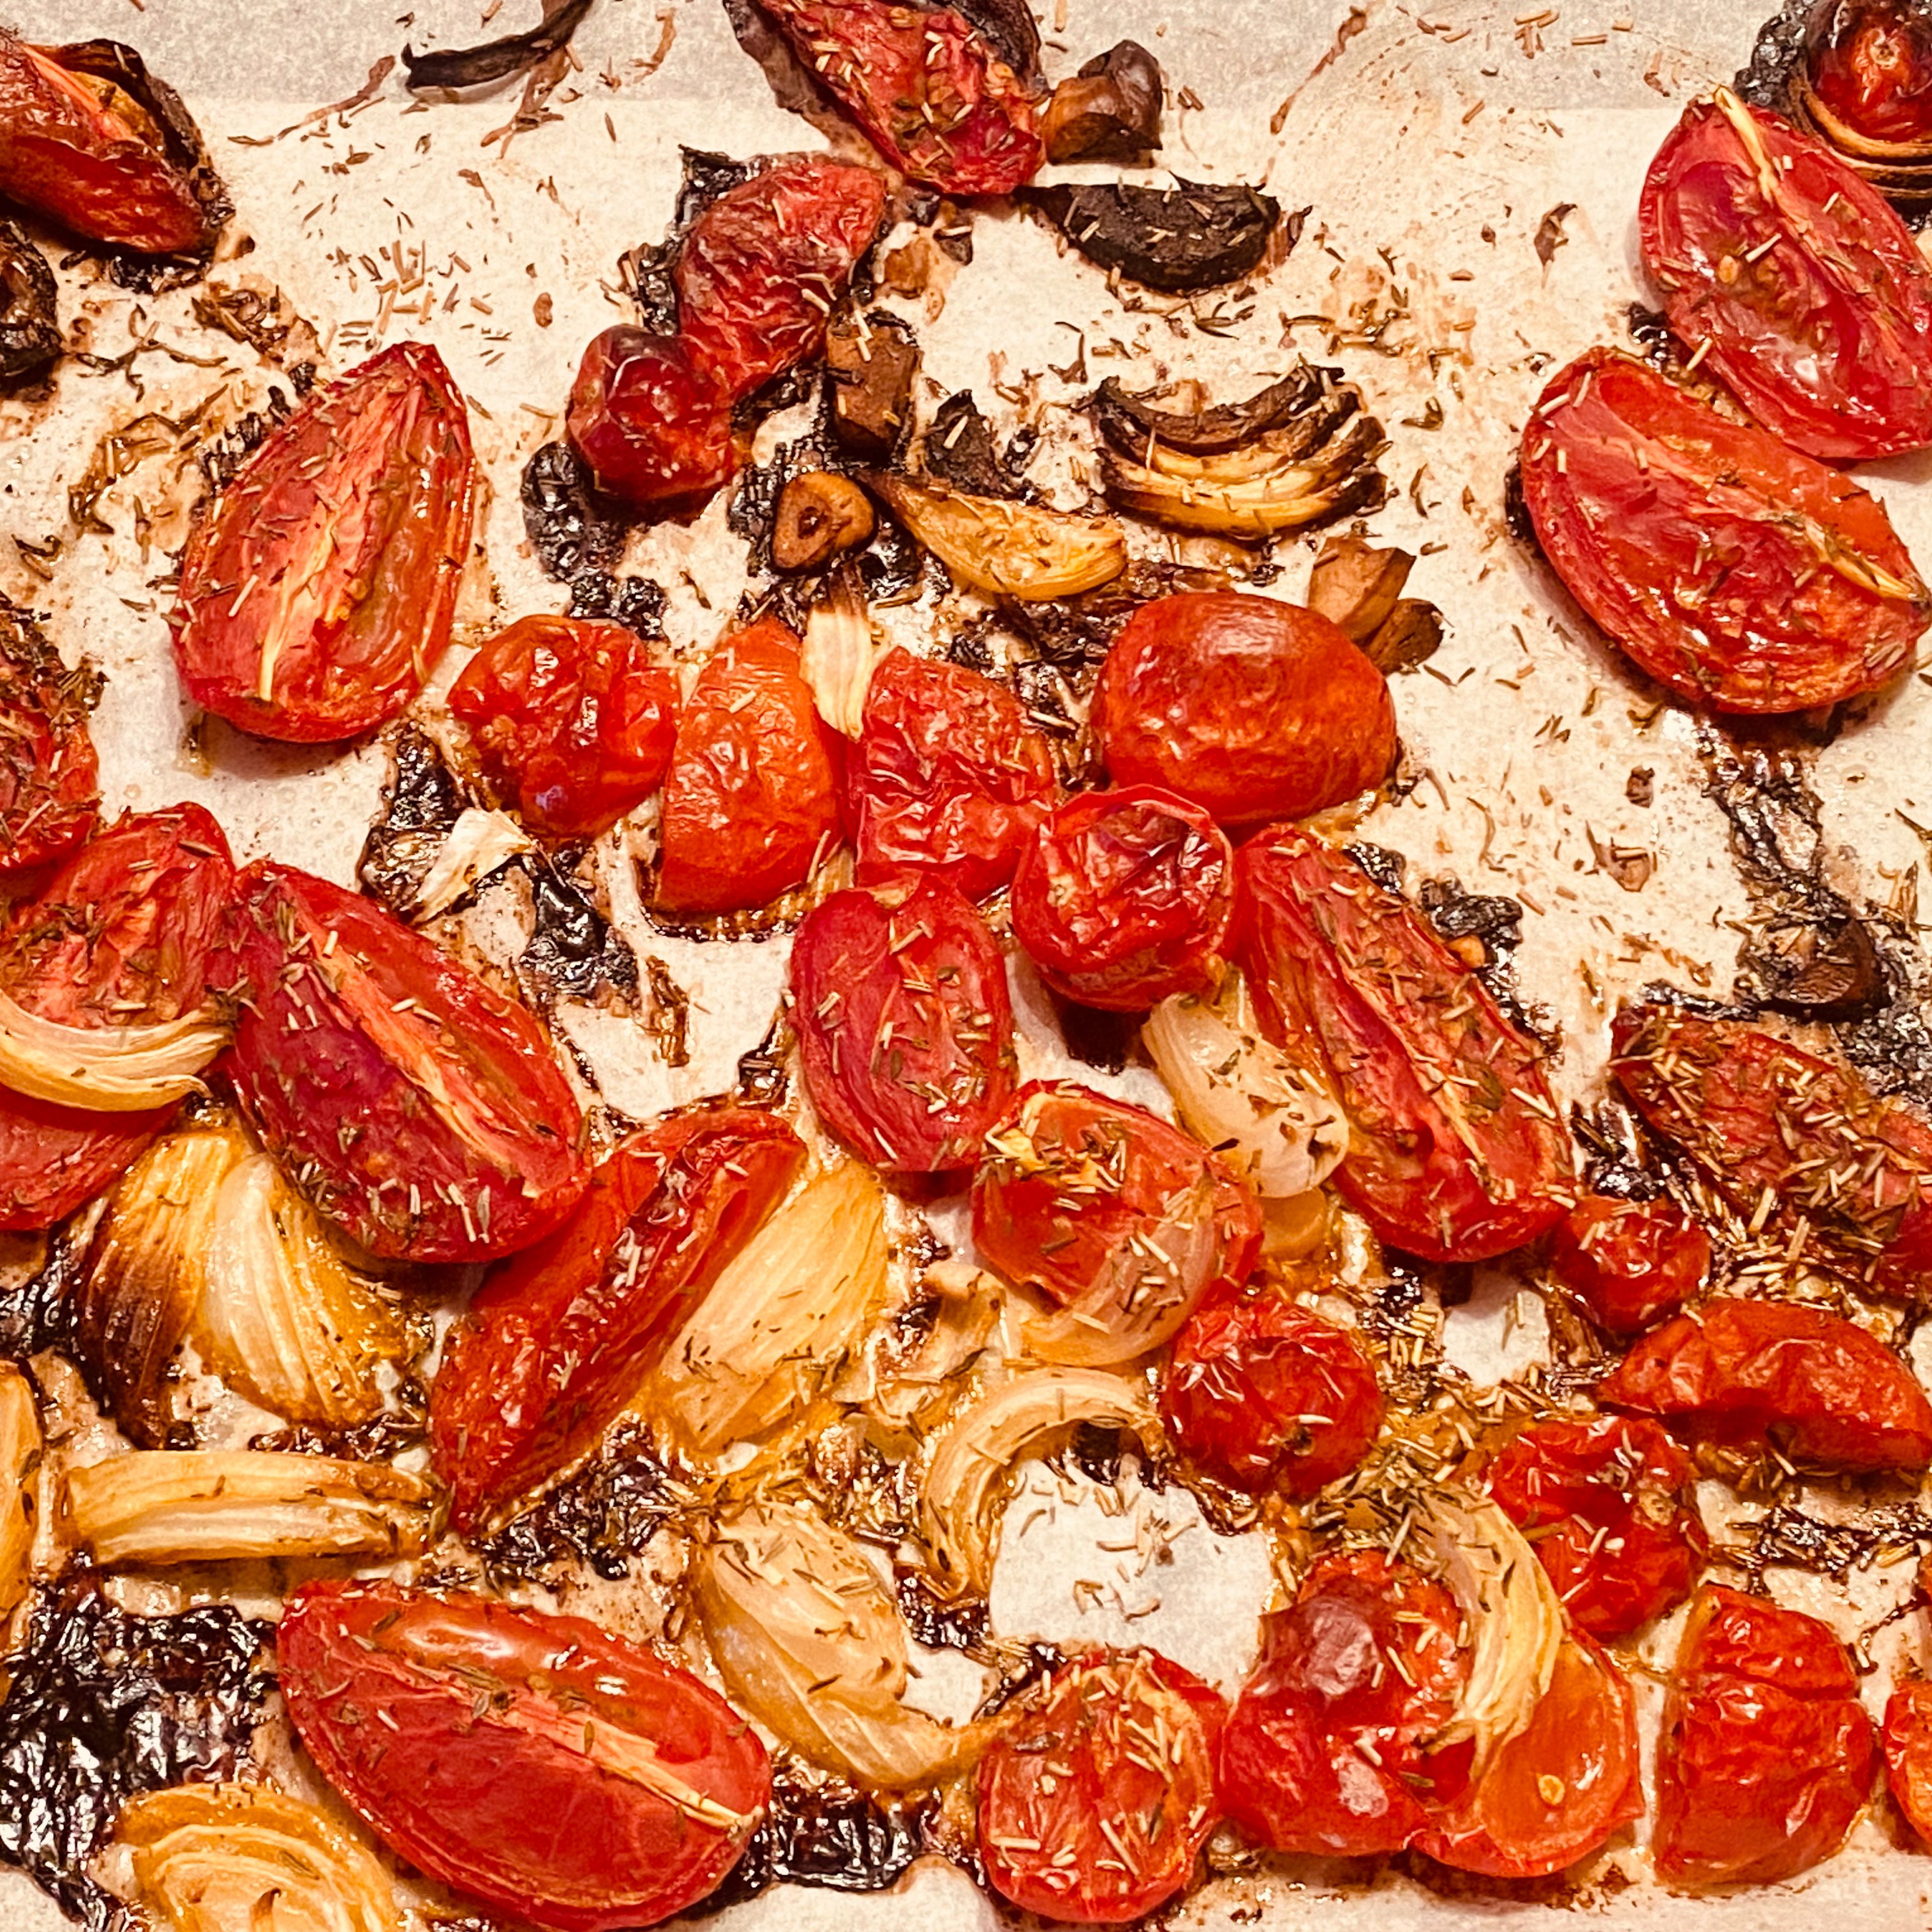 Währenddessen die Tomaten aus dem Backofen holen. Alles zusammen im Mixer oder mit dem Pürierstab pürieren.